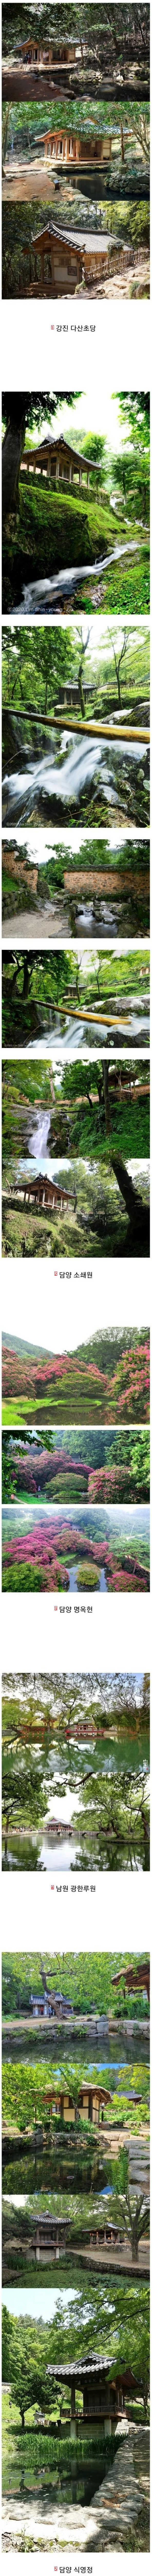 韓国人もよく知らない韓国式伝統庭園